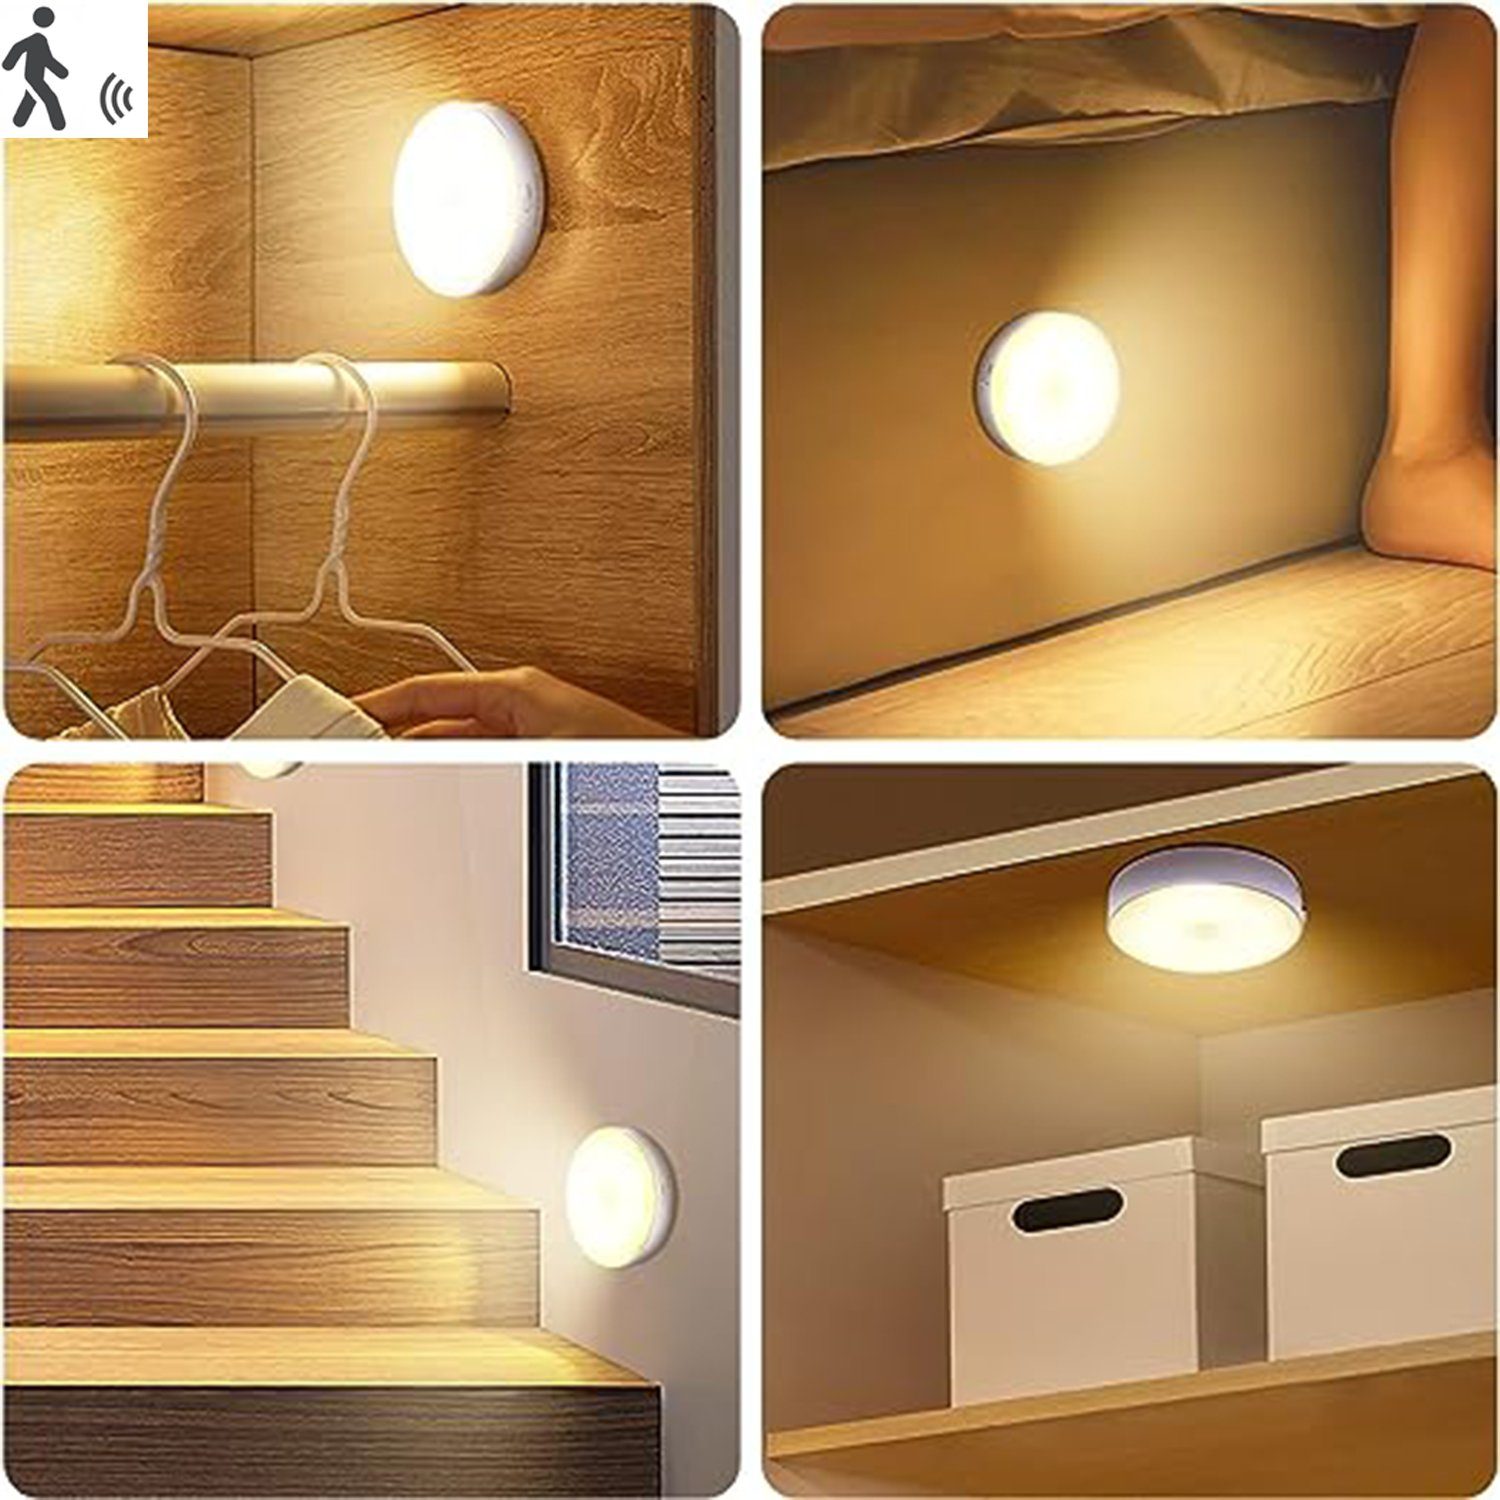 IBETTER Nachtlicht LED Nachtlicht,mit Bewegungsmelder, LED Wandlampe, mit Bewegungsmelder,für Treppenlich Kinderzimmer, Schlafzimmer Warmlicht